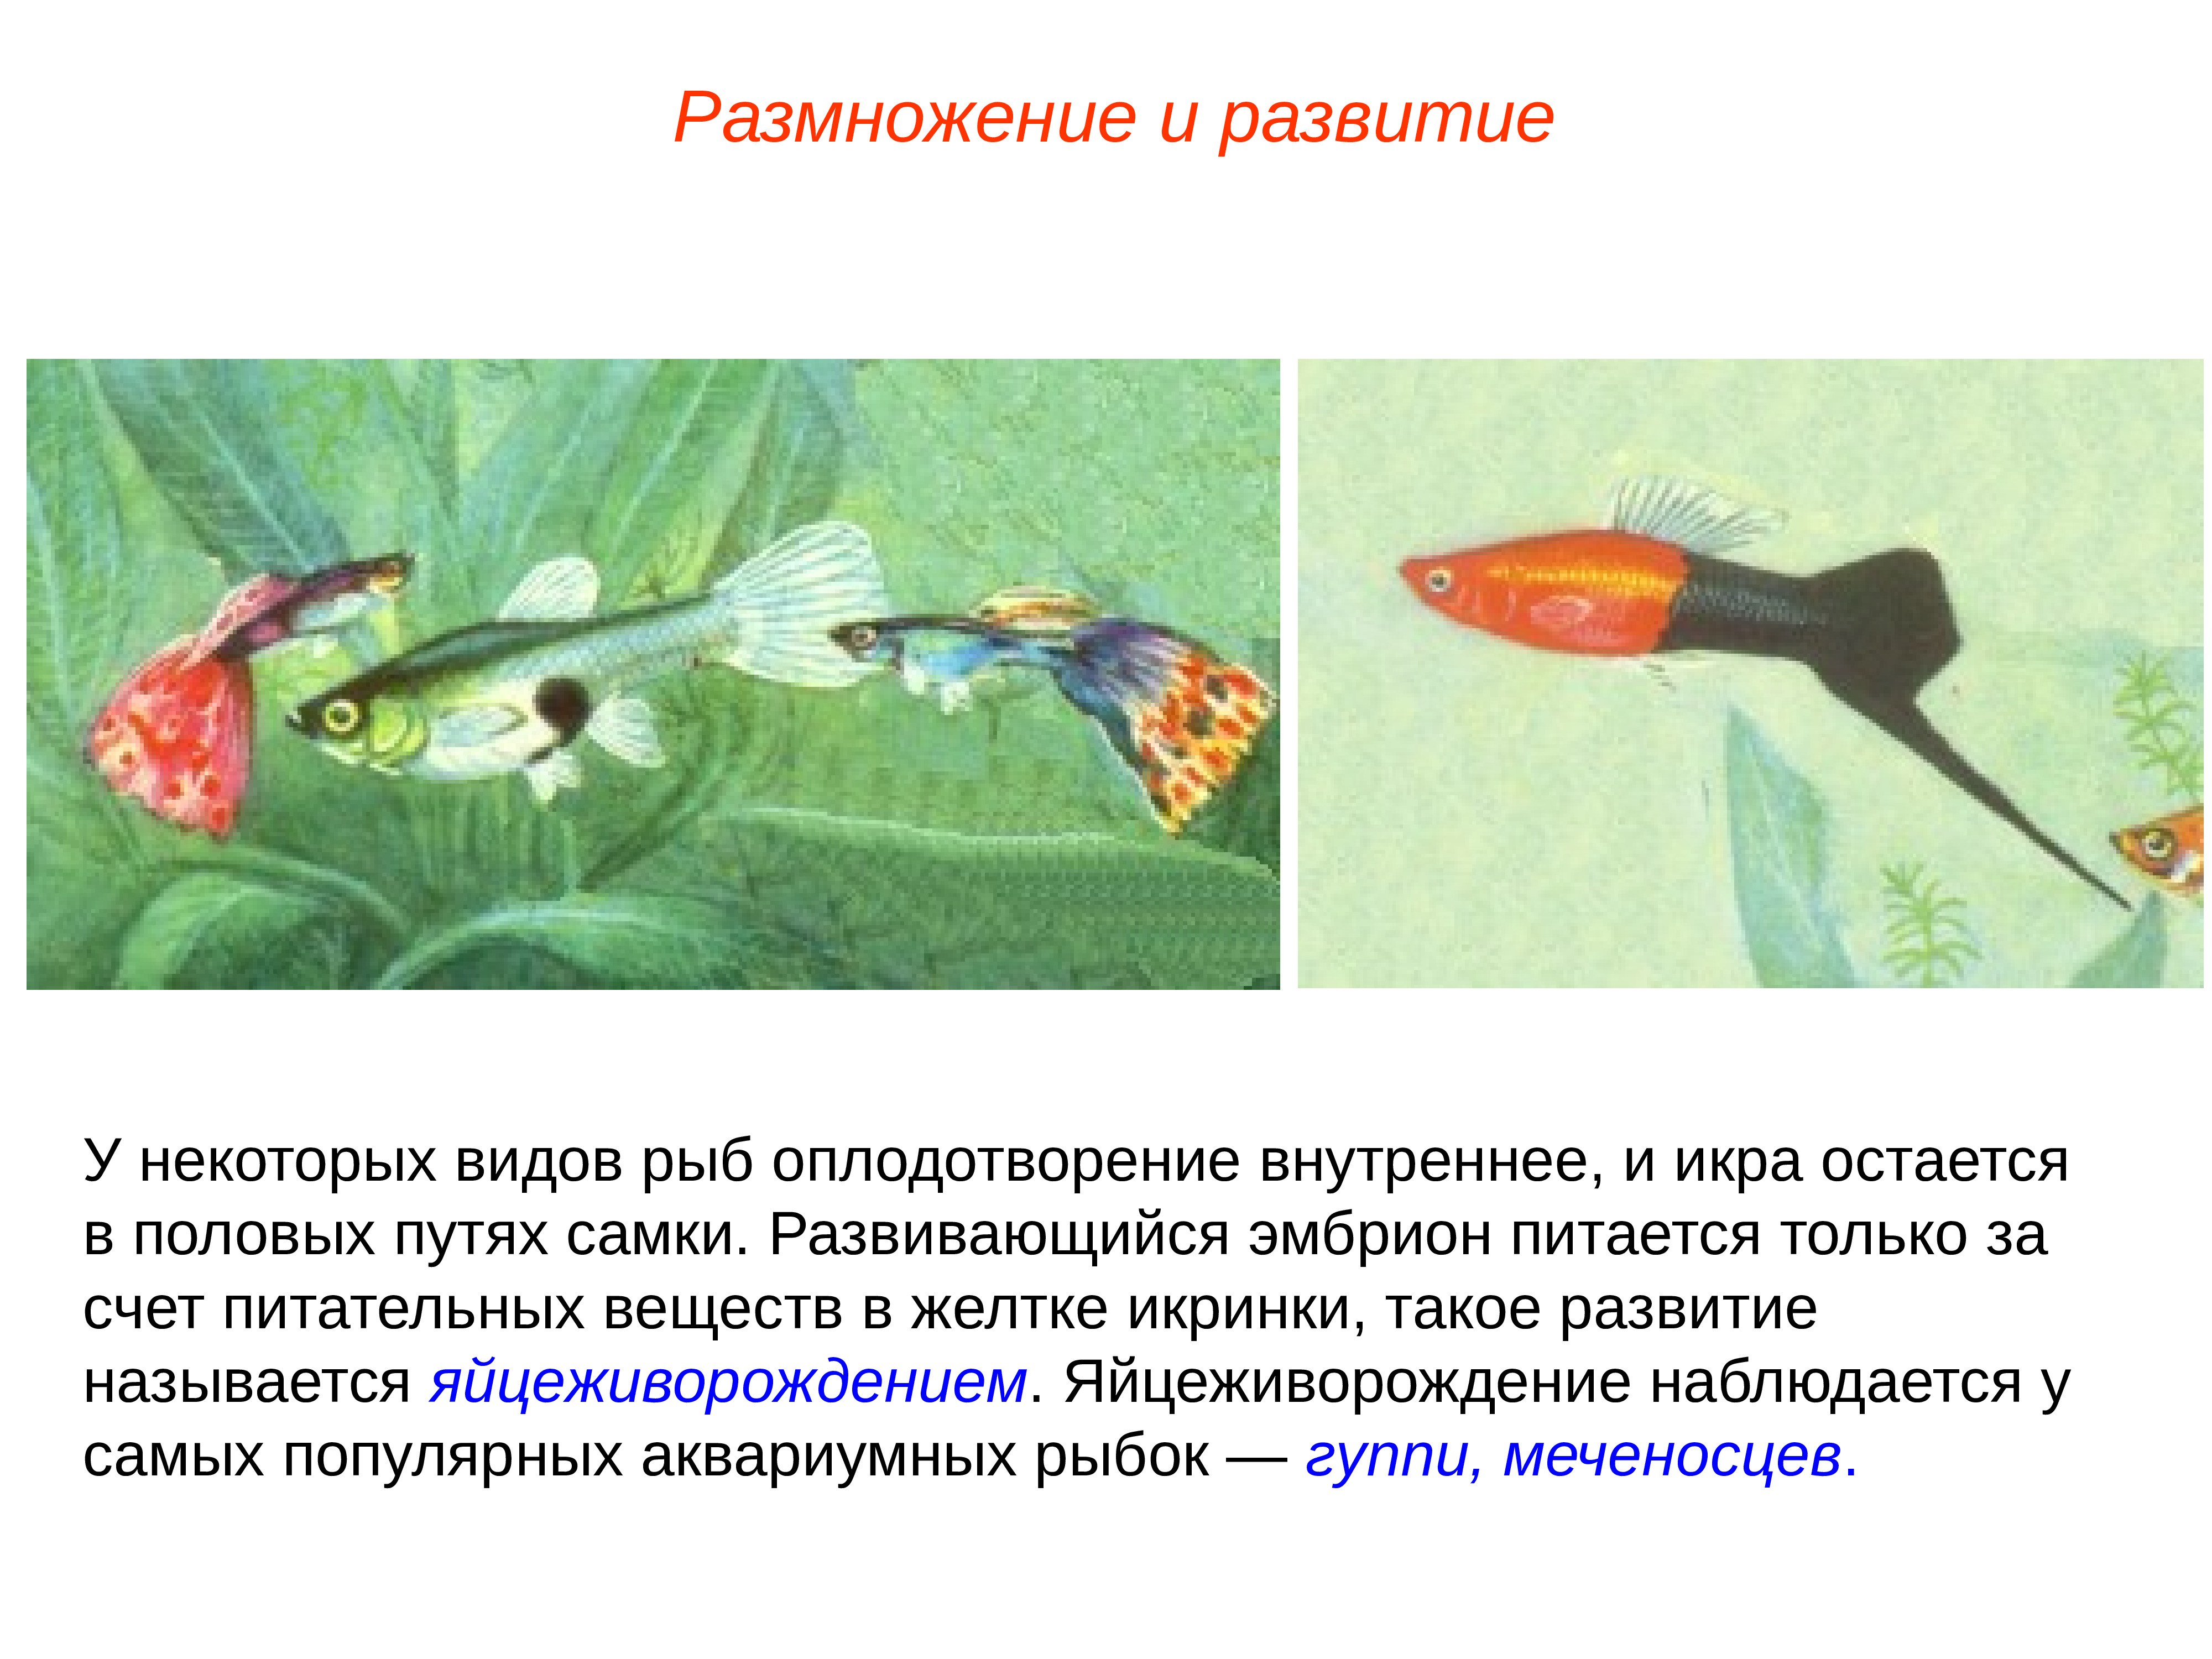 Какое оплодотворение характерно для костных рыб. Размножение и оплодотворение у рыб. Внутреннее оплодотворение у рыб. Развитие рыб. Этапы размножения рыб.